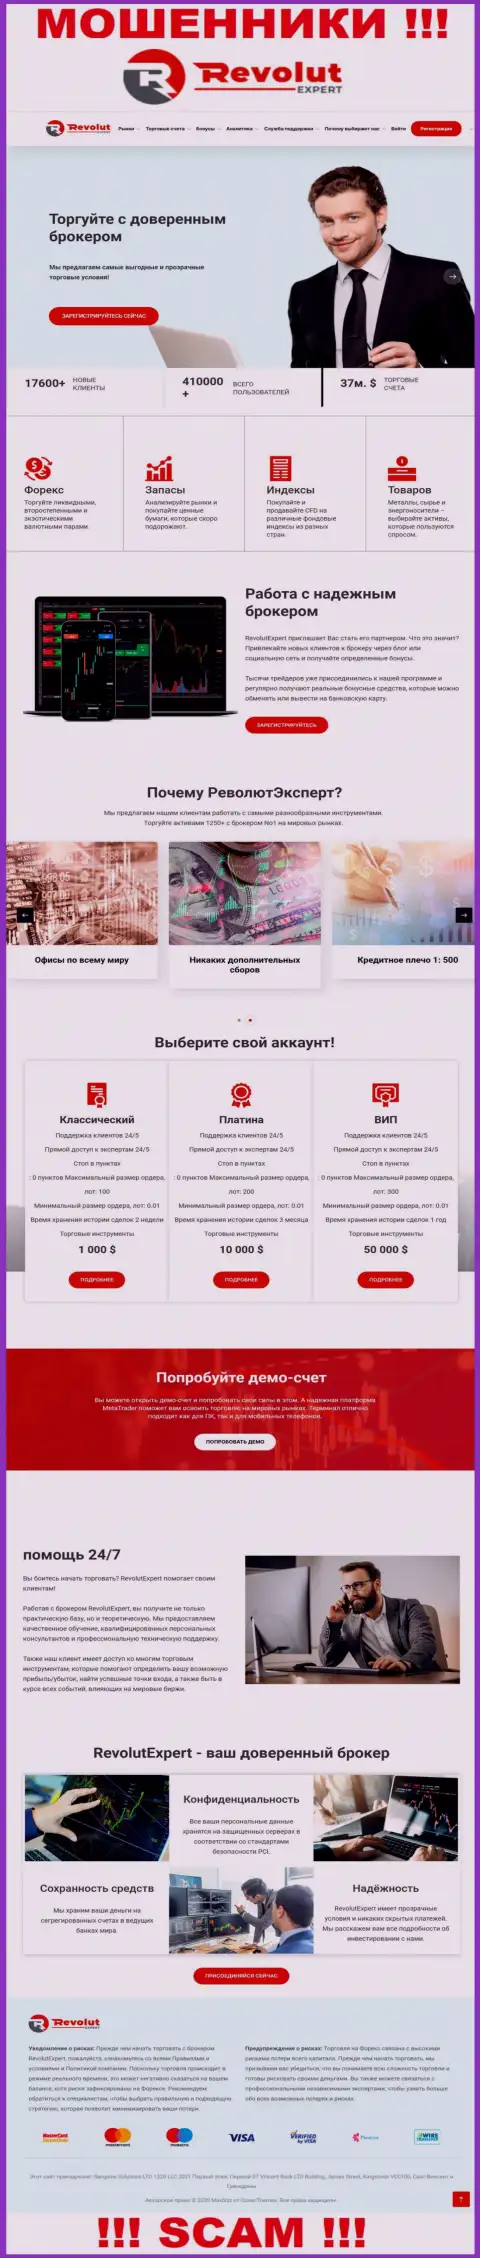 Внешний вид официального веб-сервиса жульнической компании РеволютЭксперт